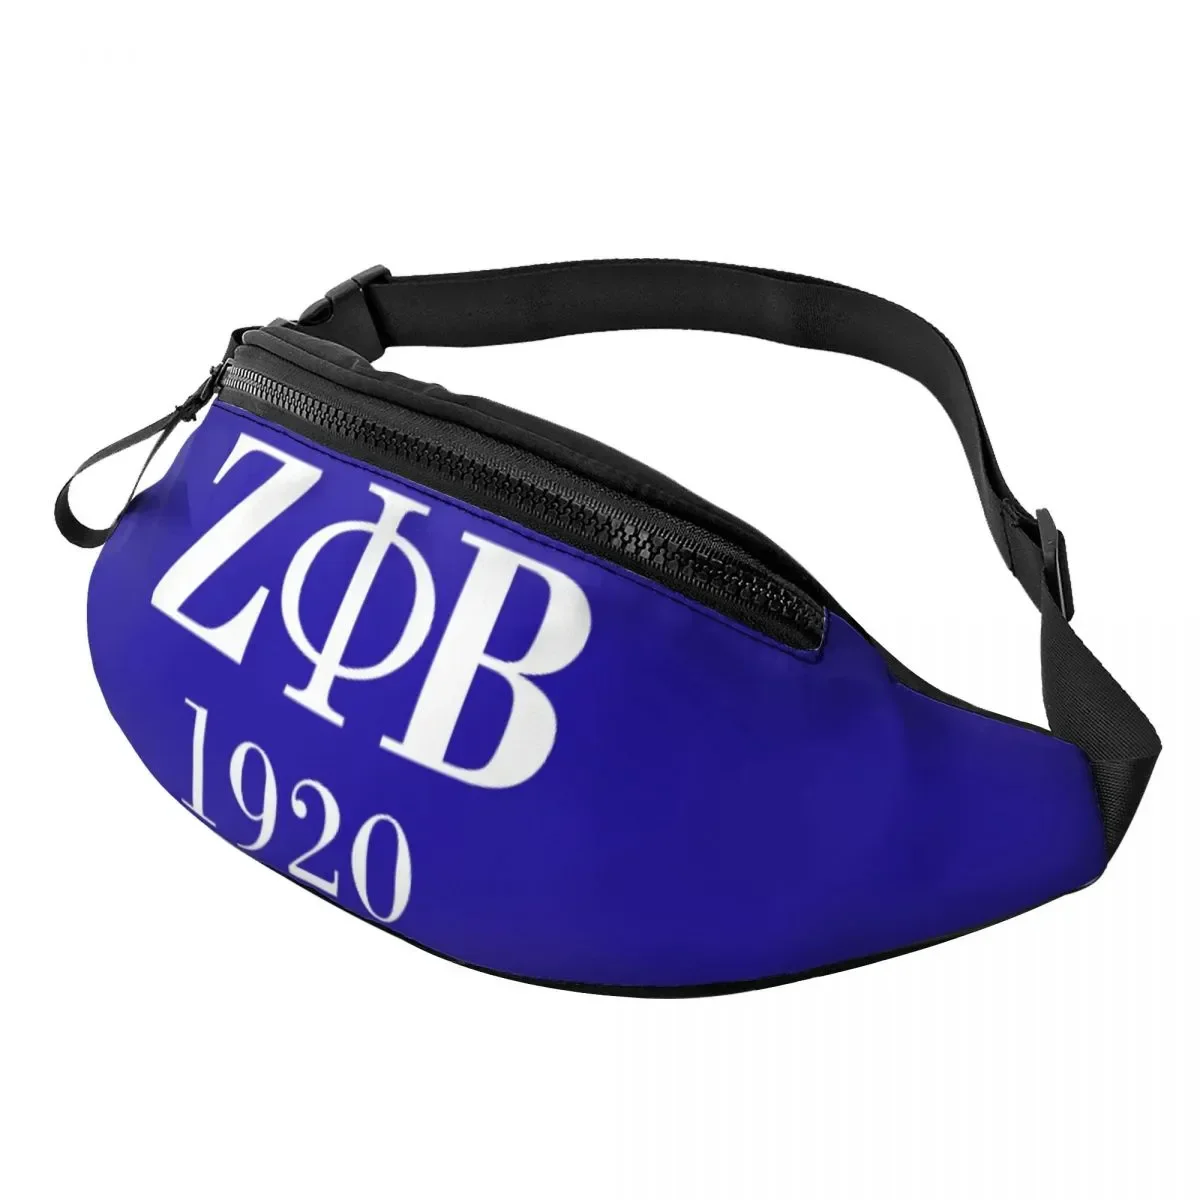 

Женская поясная сумка Zeta Phi Beta Sorority с логотипом, Повседневная сумка с греческими буквами 1920, сумка через плечо для кемпинга, езды на велосипеде, телефона, денег